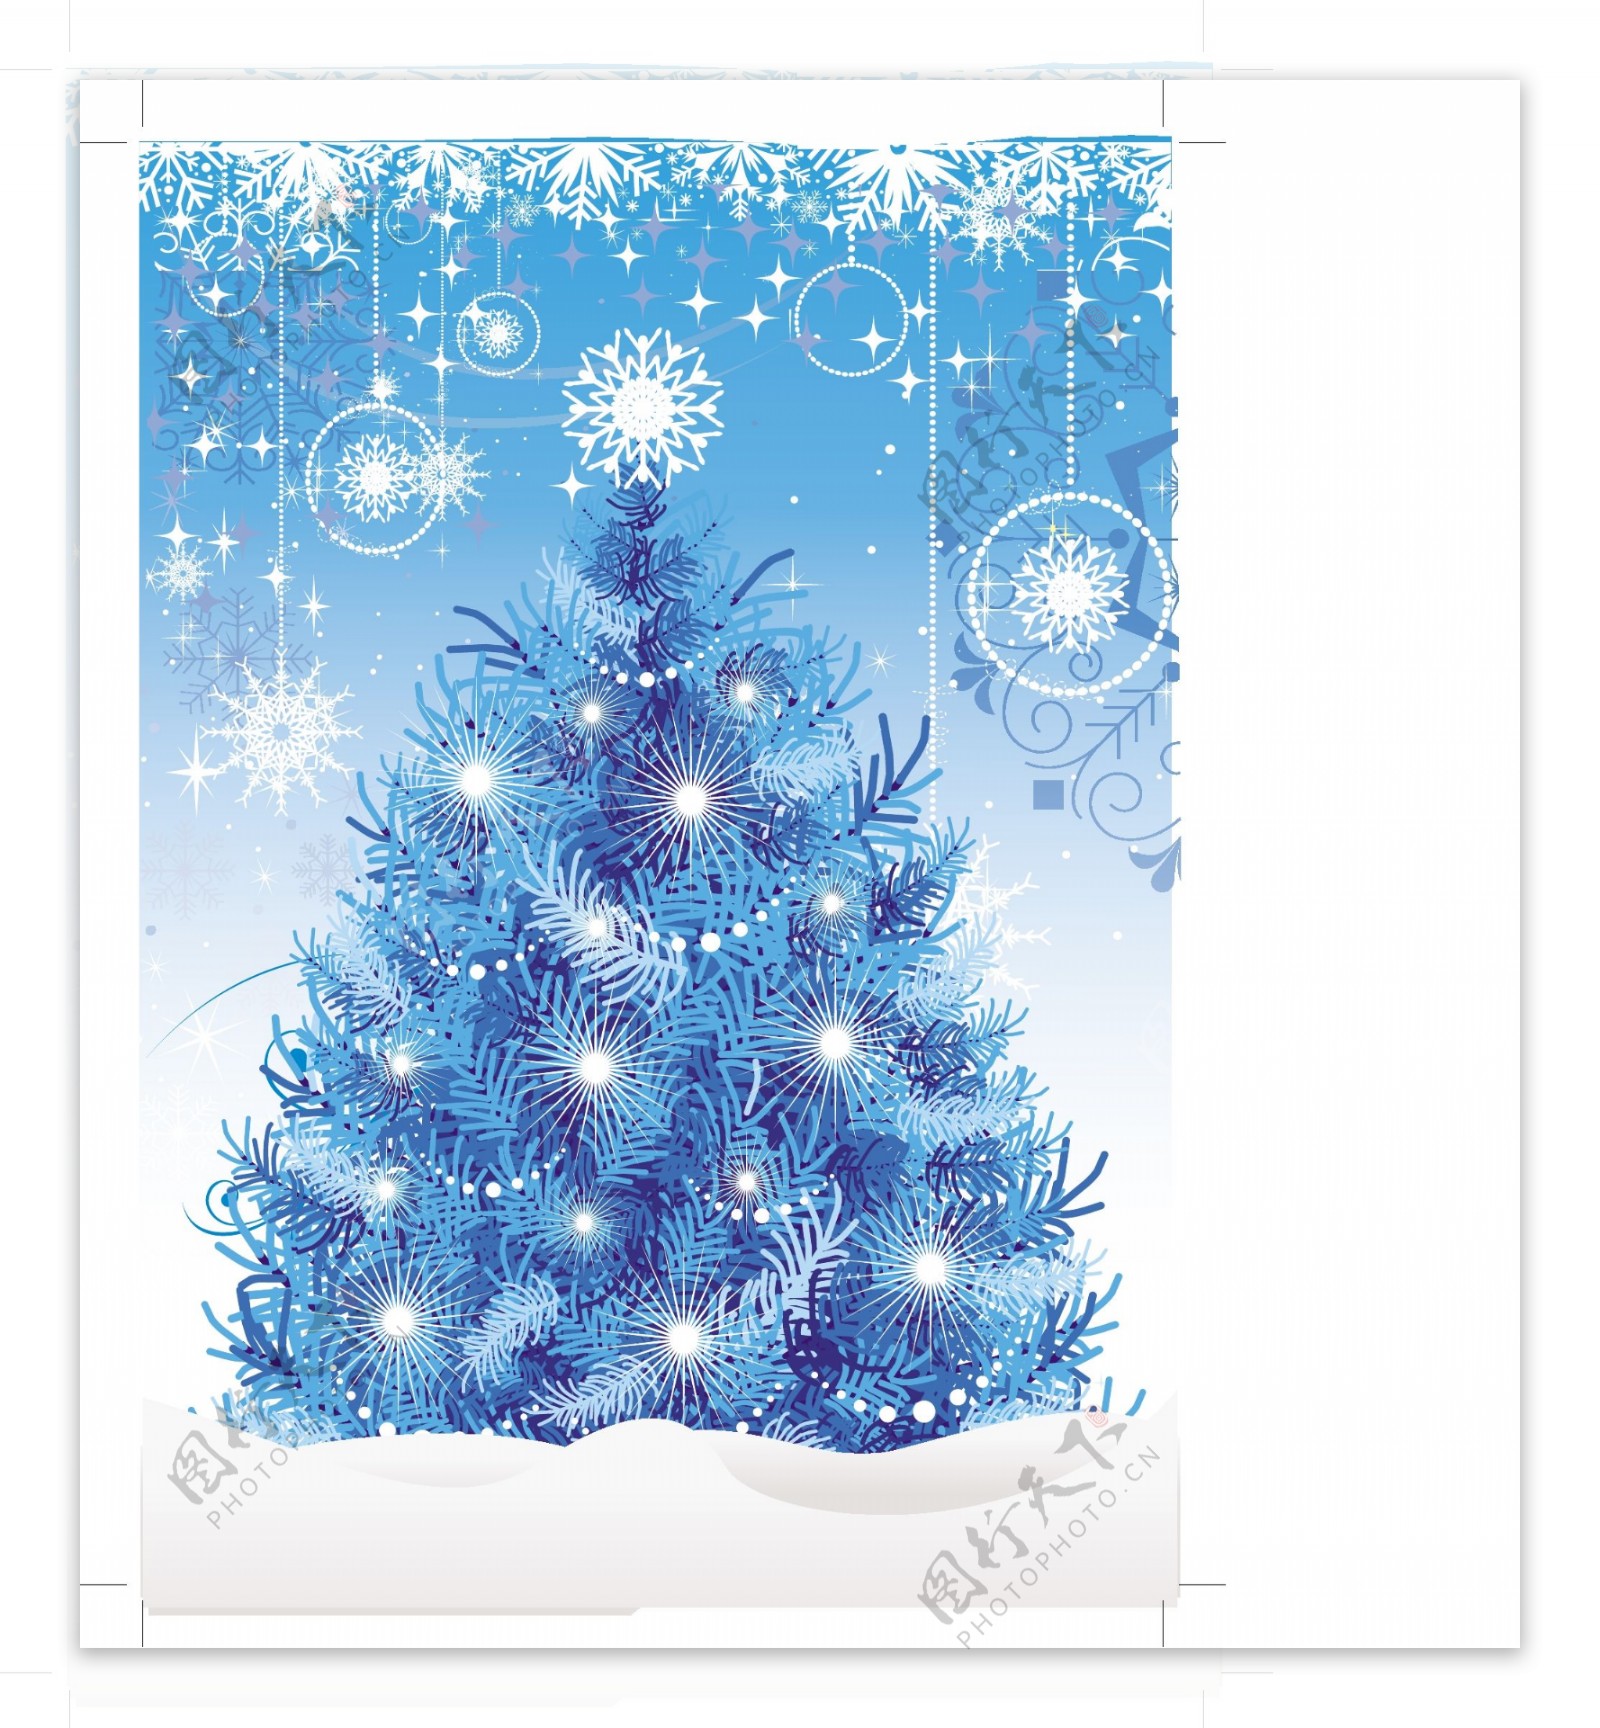 冰雪蓝色圣诞树矢量素材